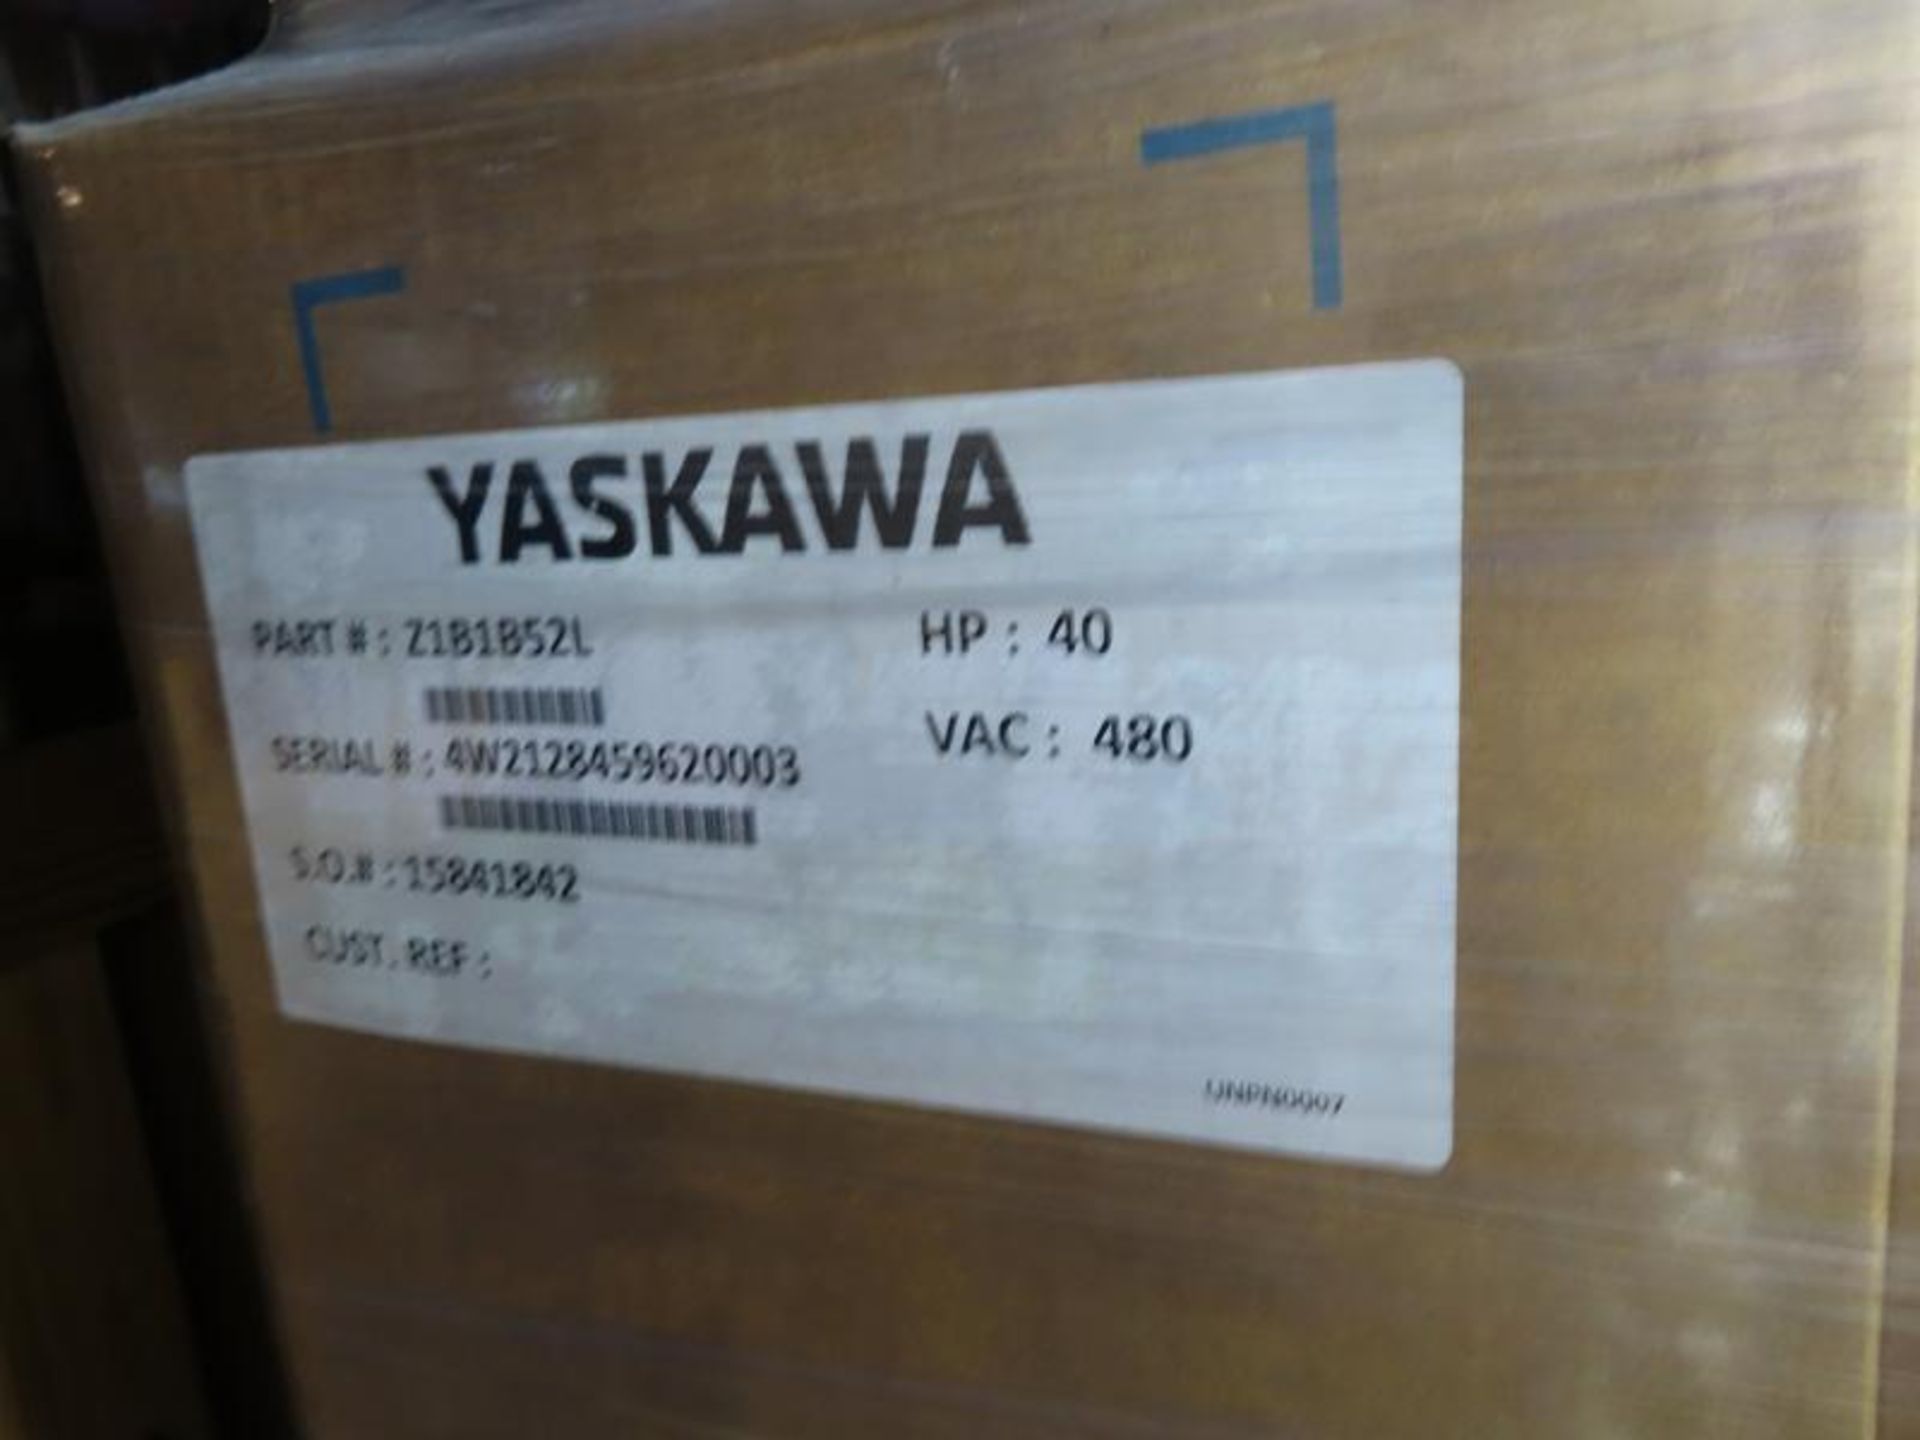 2021 YASKAWA AC DRIVES, YASKAWA PART #Z1B1B52L (5) - Image 4 of 4